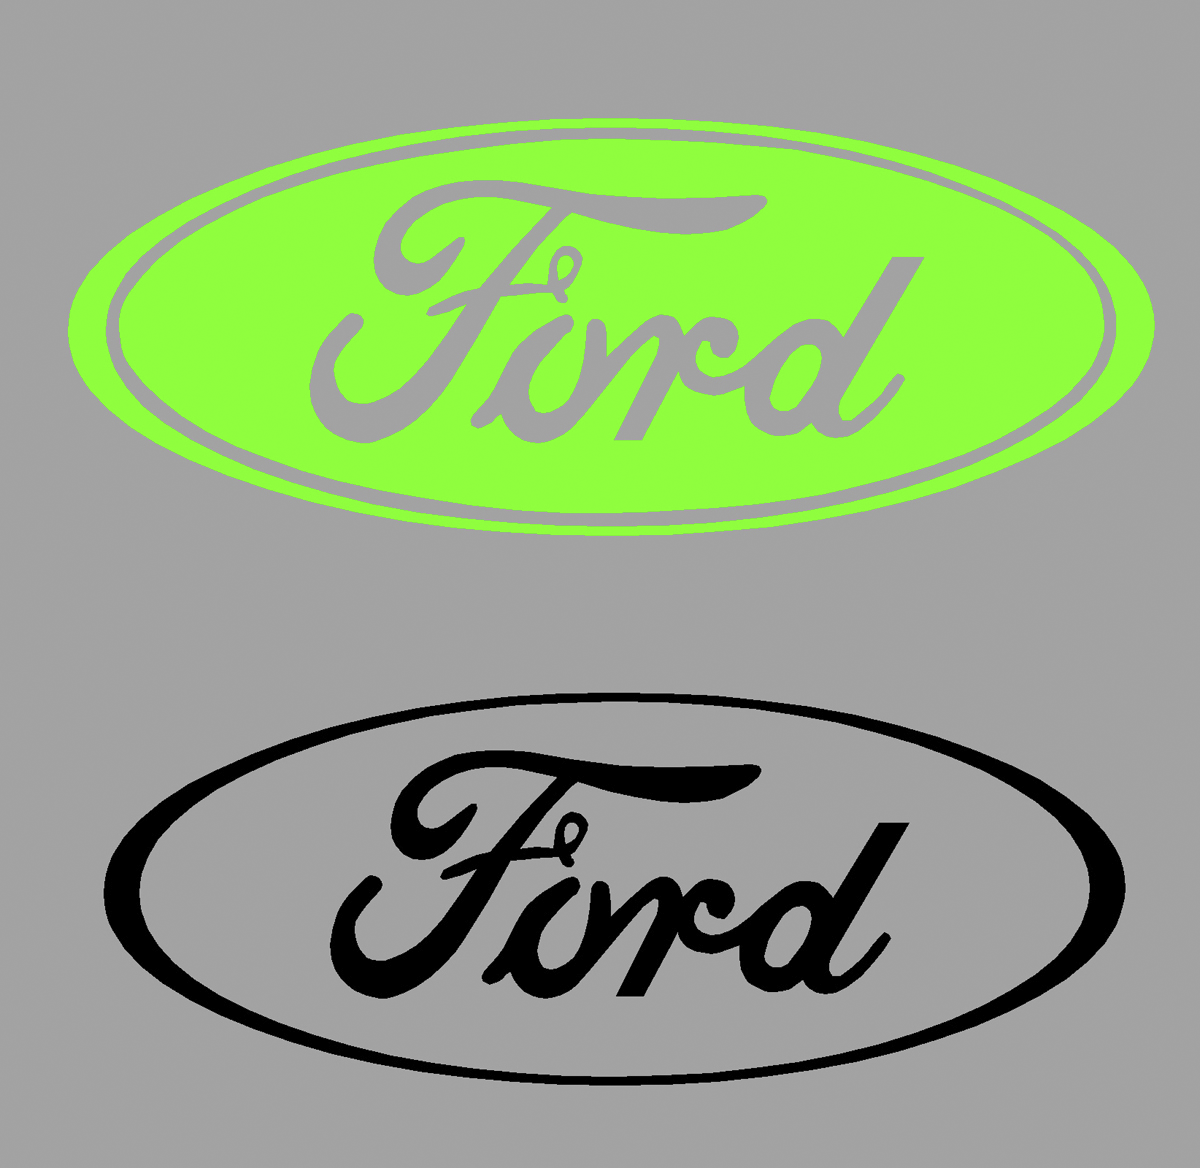 Ford Logo - Aufkleber, Beschriftungen, T-Shirt Druck und mehr